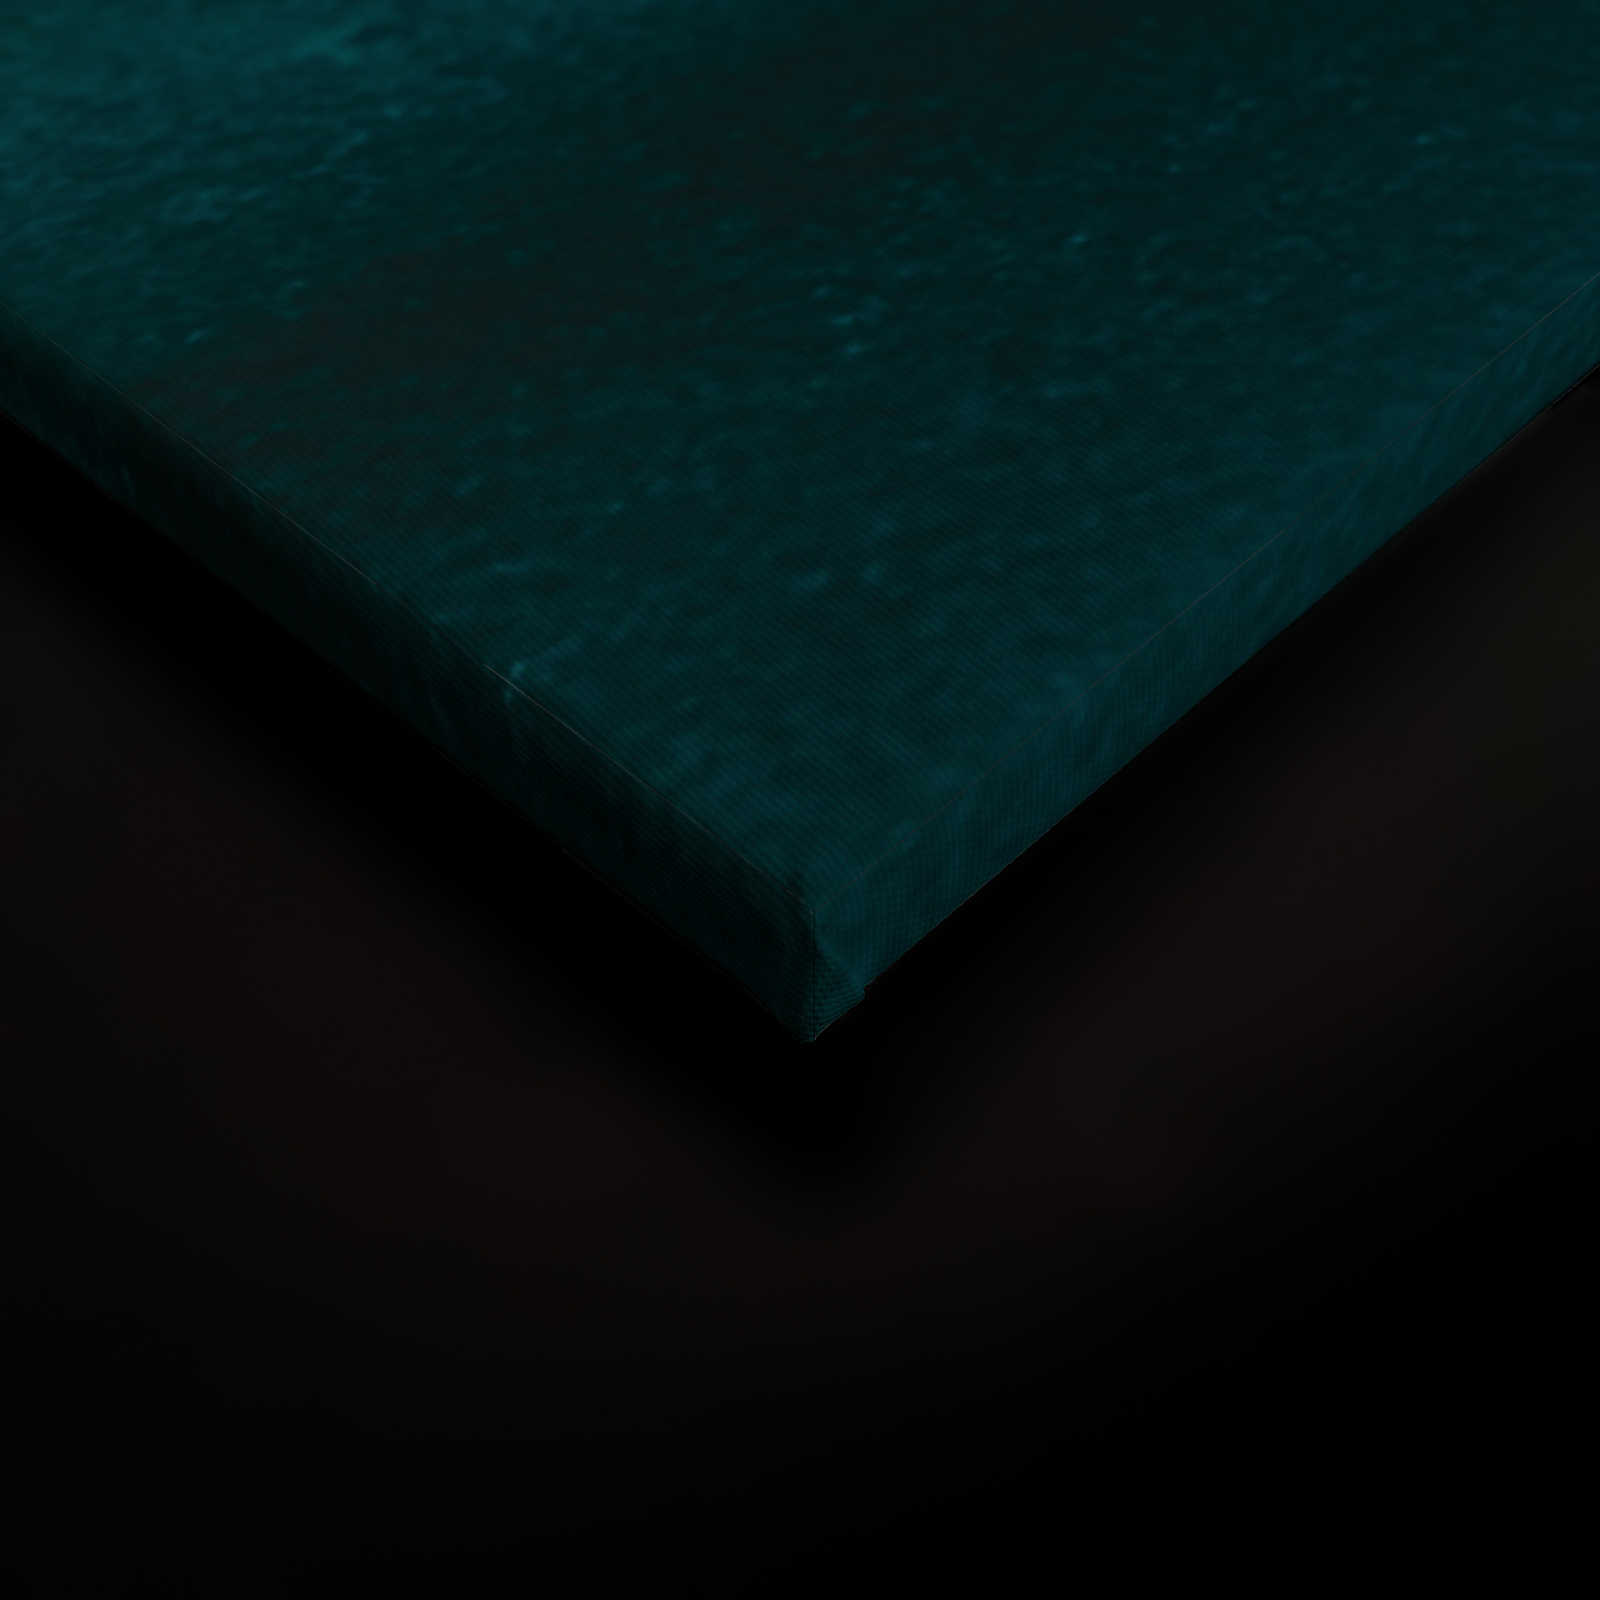             Gezeiten Leinwandbild mit abstraktem Wasser Aquarell – 1,20 m x 0,80 m
        